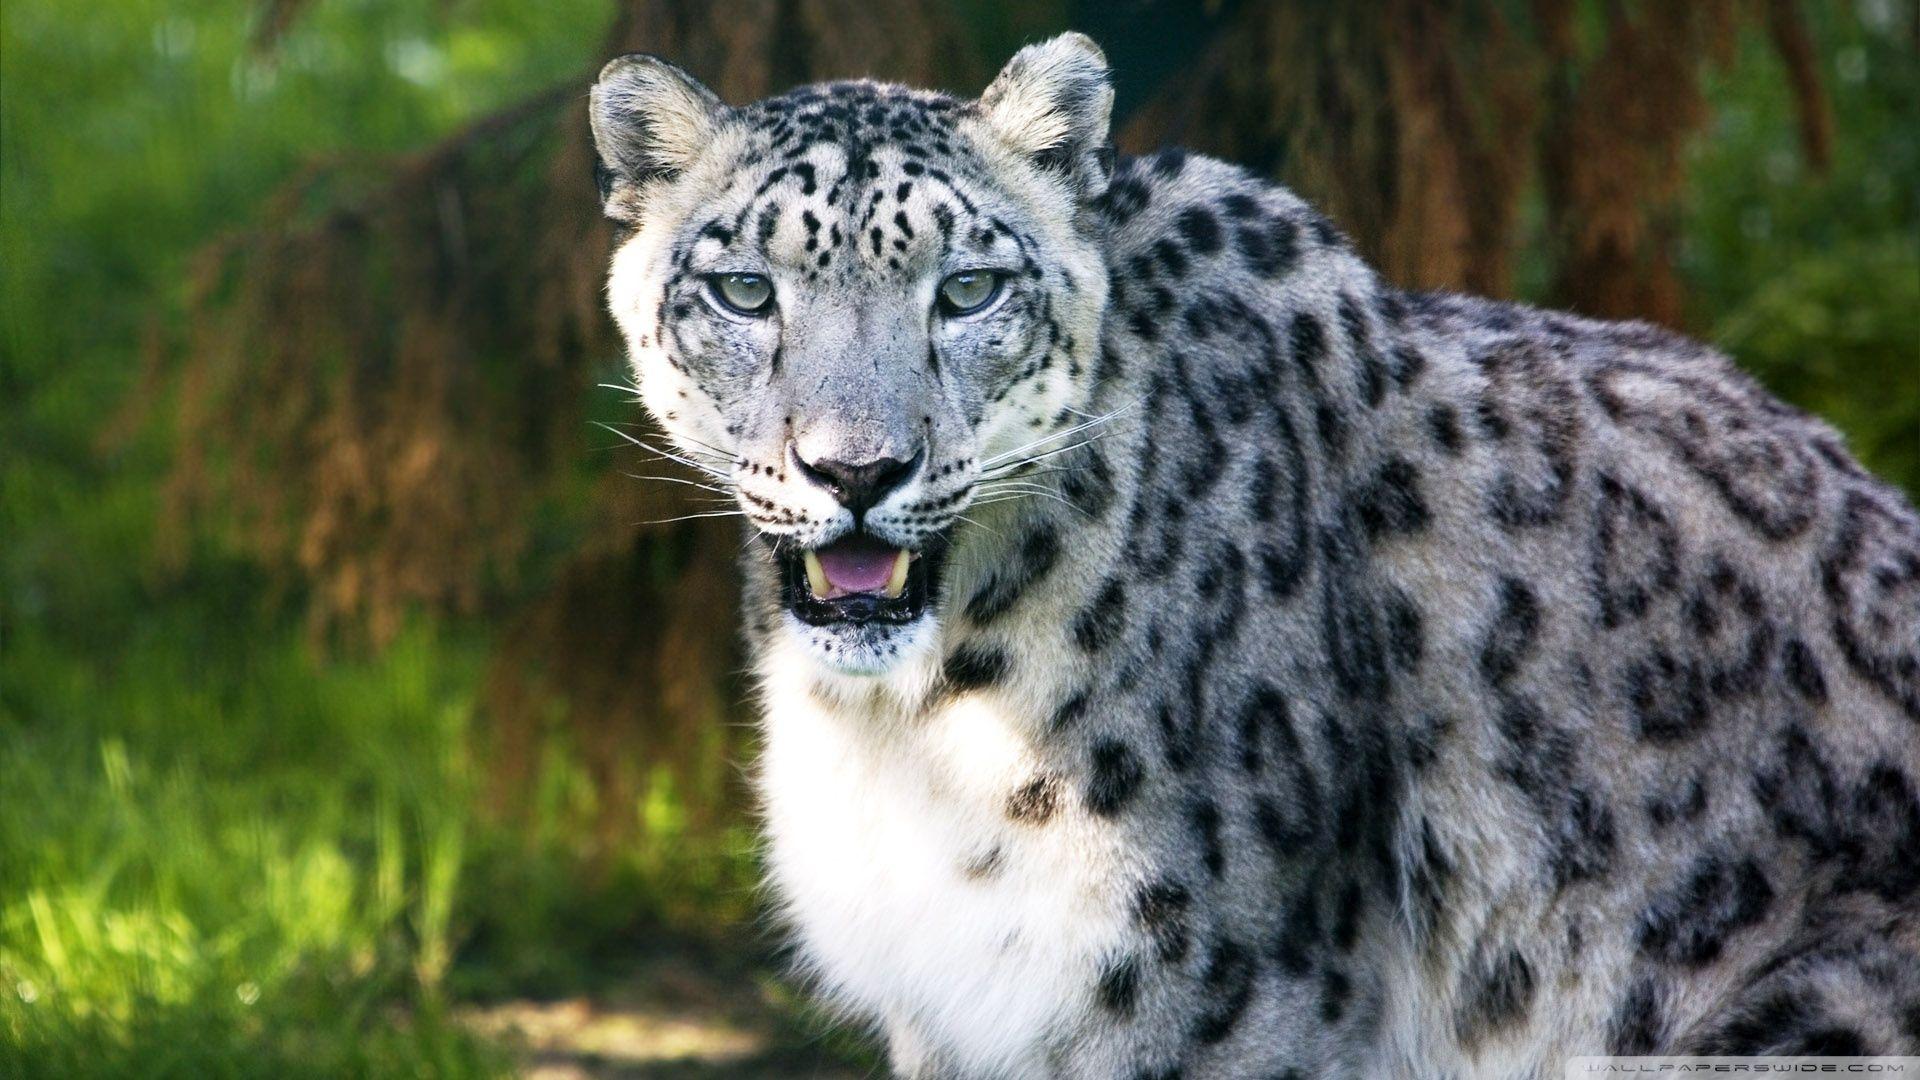 Snow Leopard Wild Animal HD desktop wallpaper, Widescreen, High